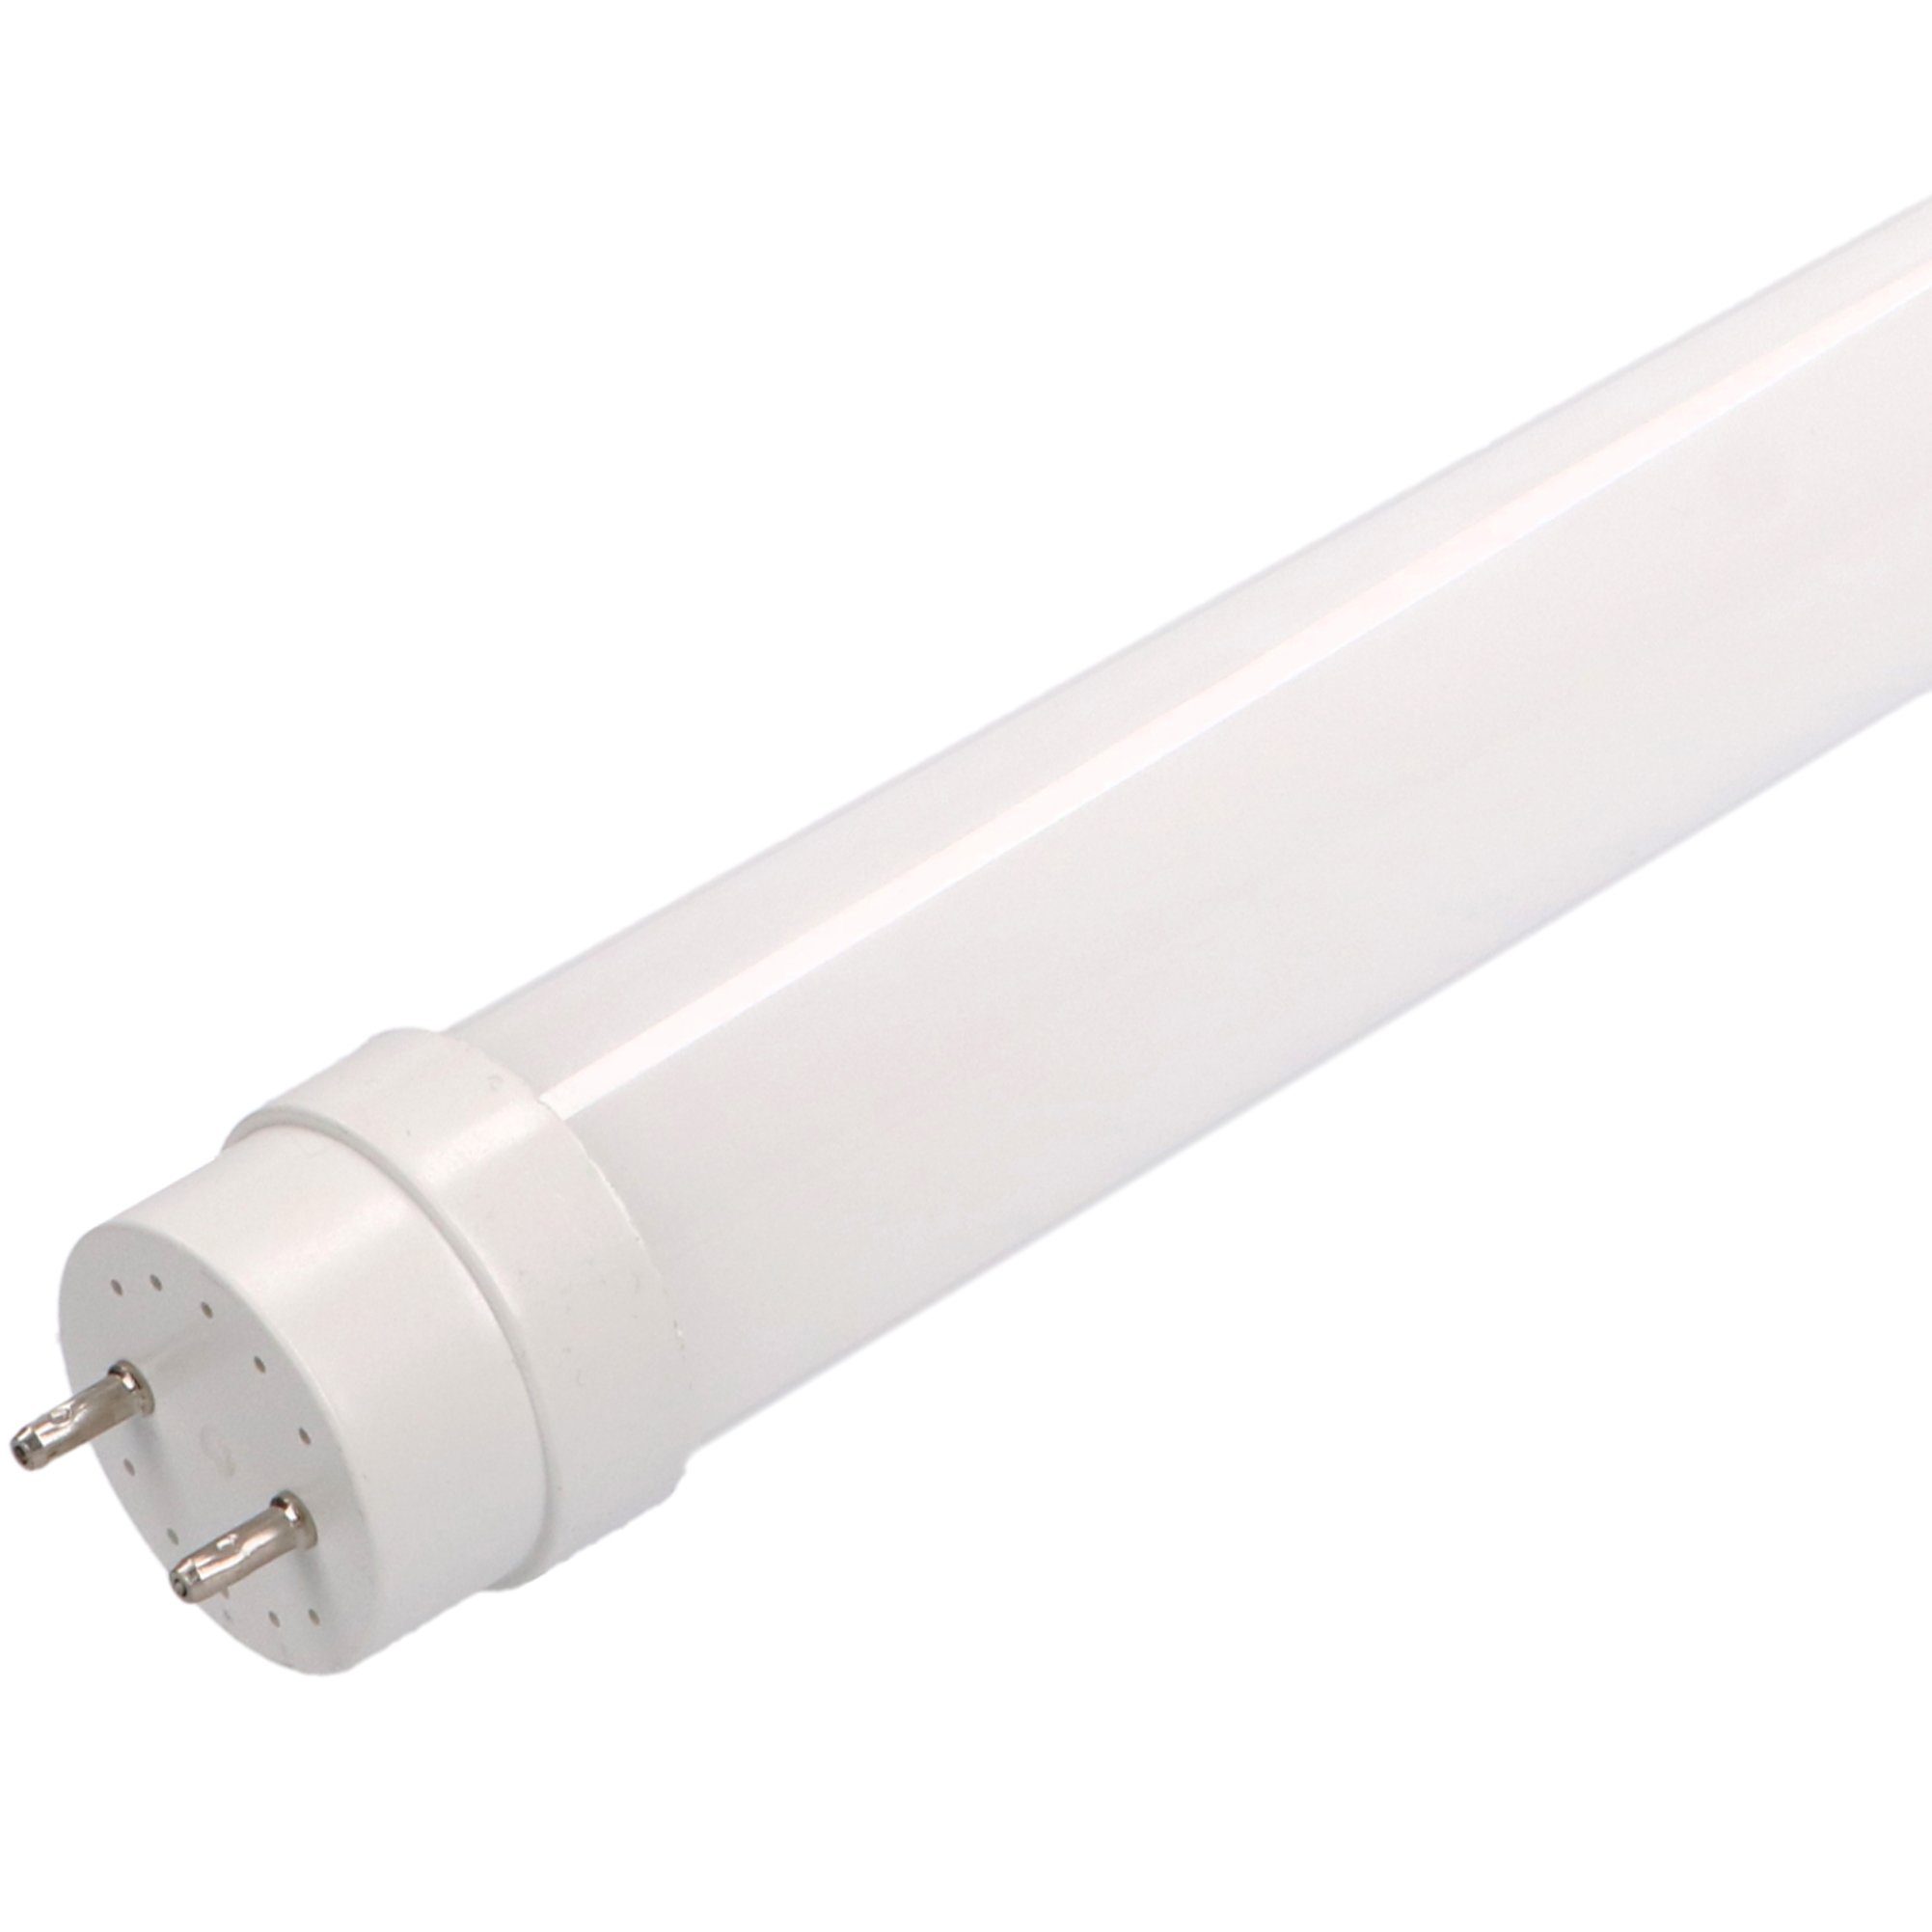 LED's light Basic LED-Leuchtmittel 0610726 LED-Röhre, 120 cm 18 Watt warmweiß G13 mit Starter für KVG/VVG